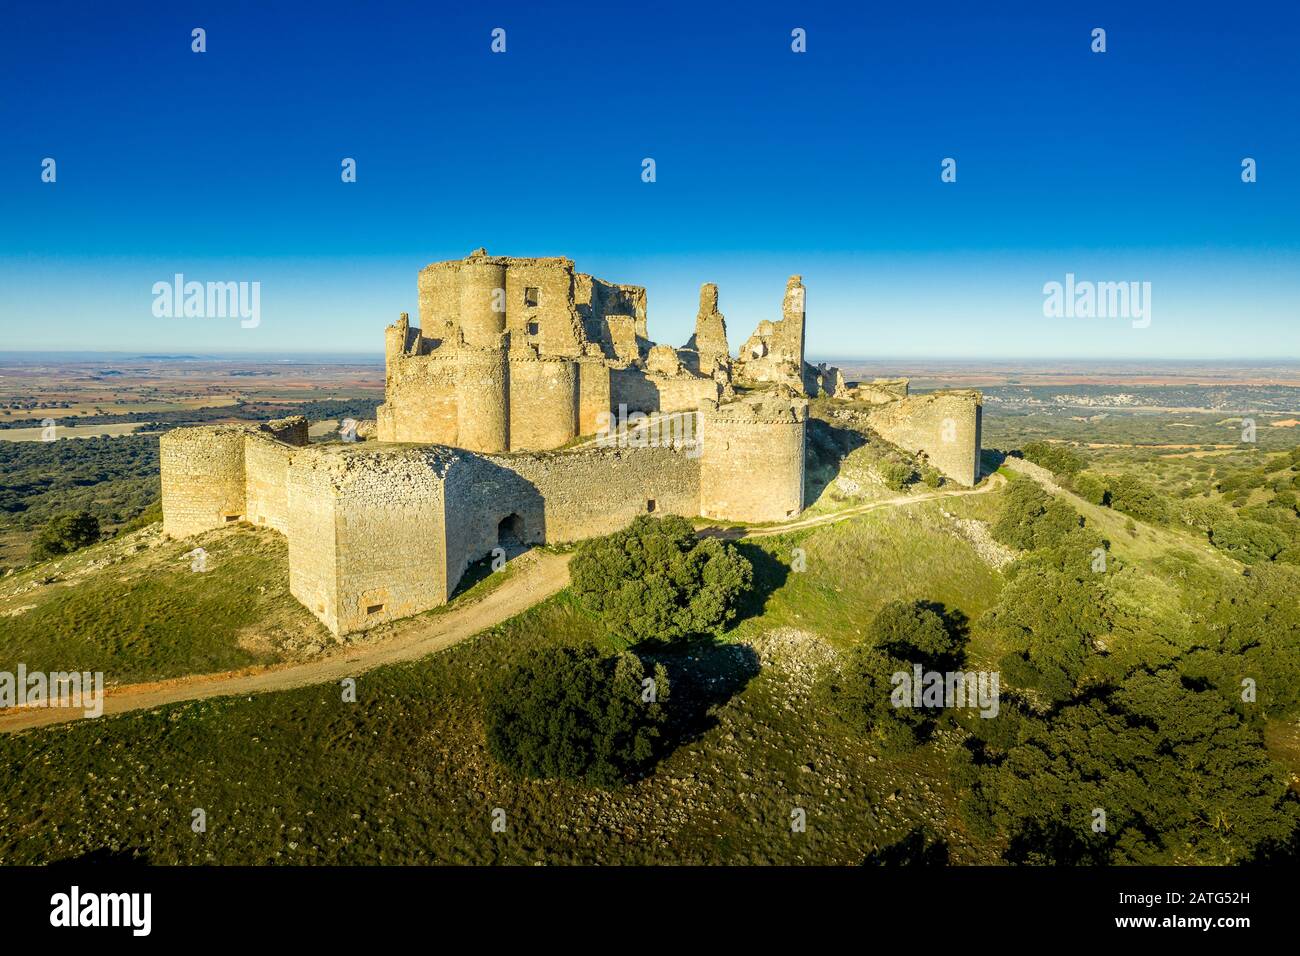 Veduta aerea del castello medievale Ruin Pueble de Almenara a Cuenca Spagna con pareti convenctriche, torri semicircolari e bastioni angolari Foto Stock